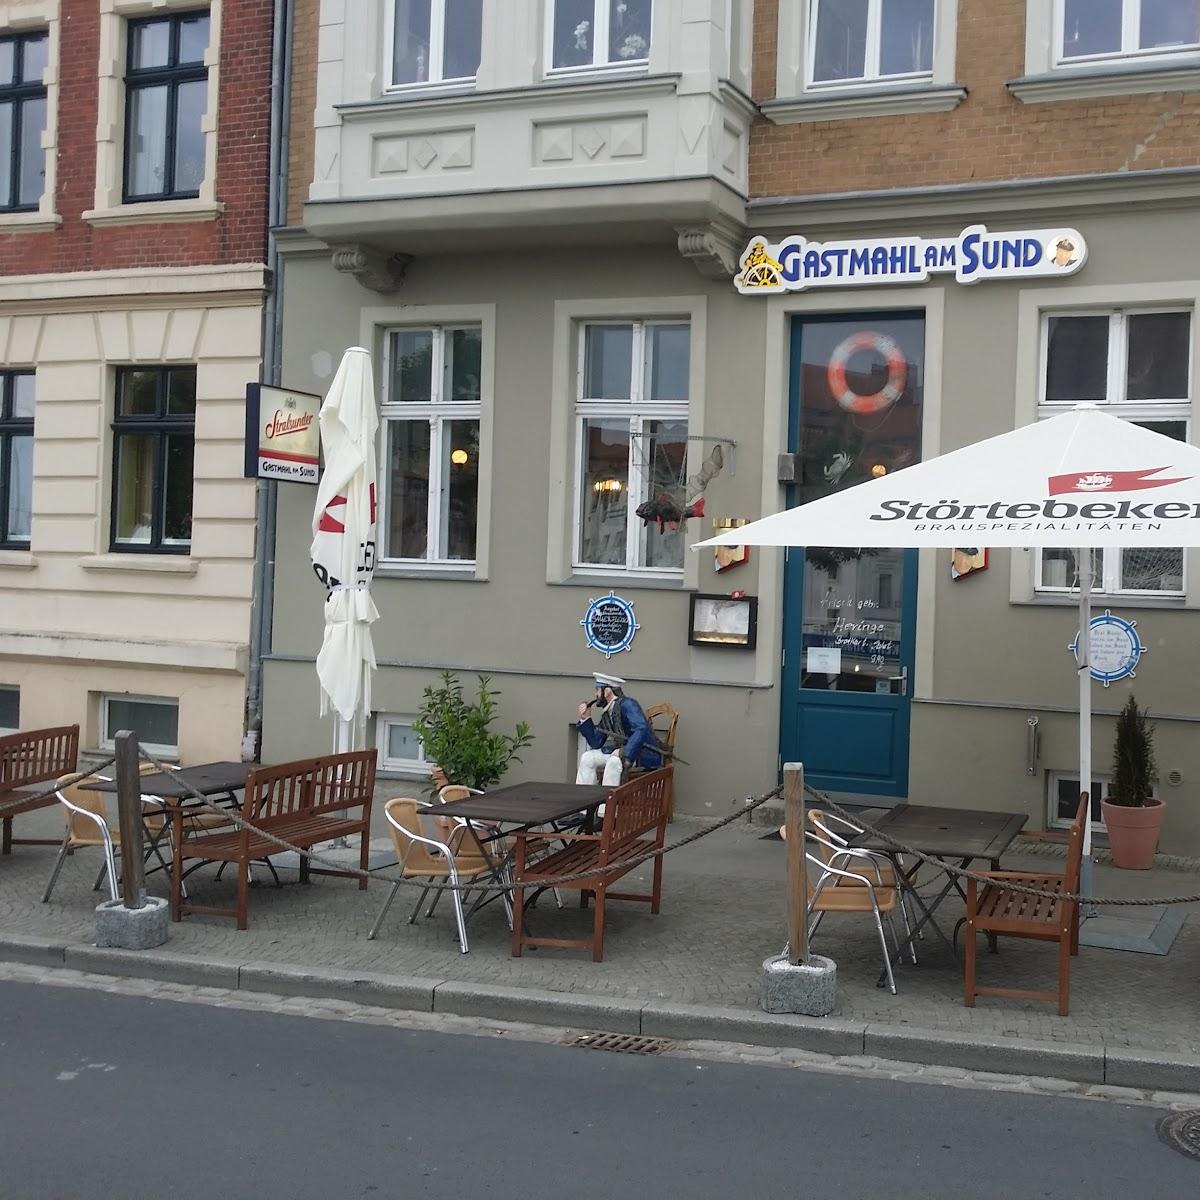 Restaurant "Gastmahl am Sund" in Stralsund